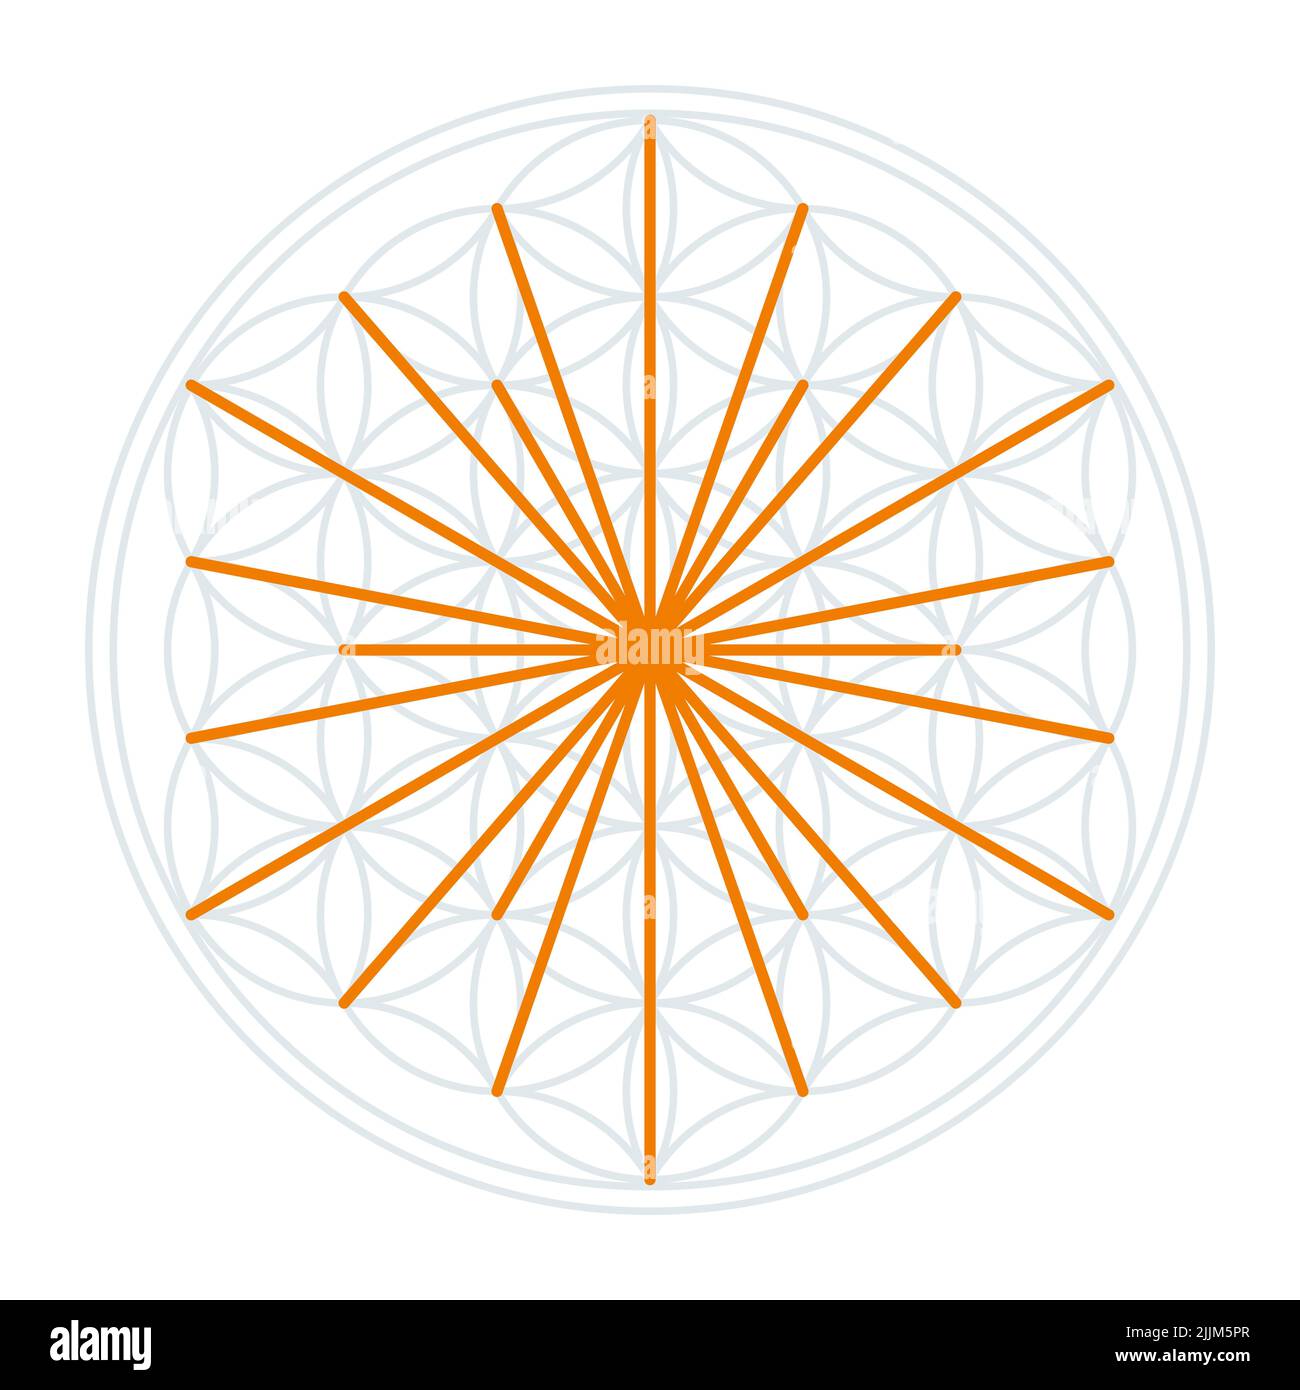 Símbolo del Sol en la Flor de la Vida. Líneas naranjas que simbolizan los rayos del sol, derivadas de los puntos de intersección de los círculos superpuestos. Foto de stock